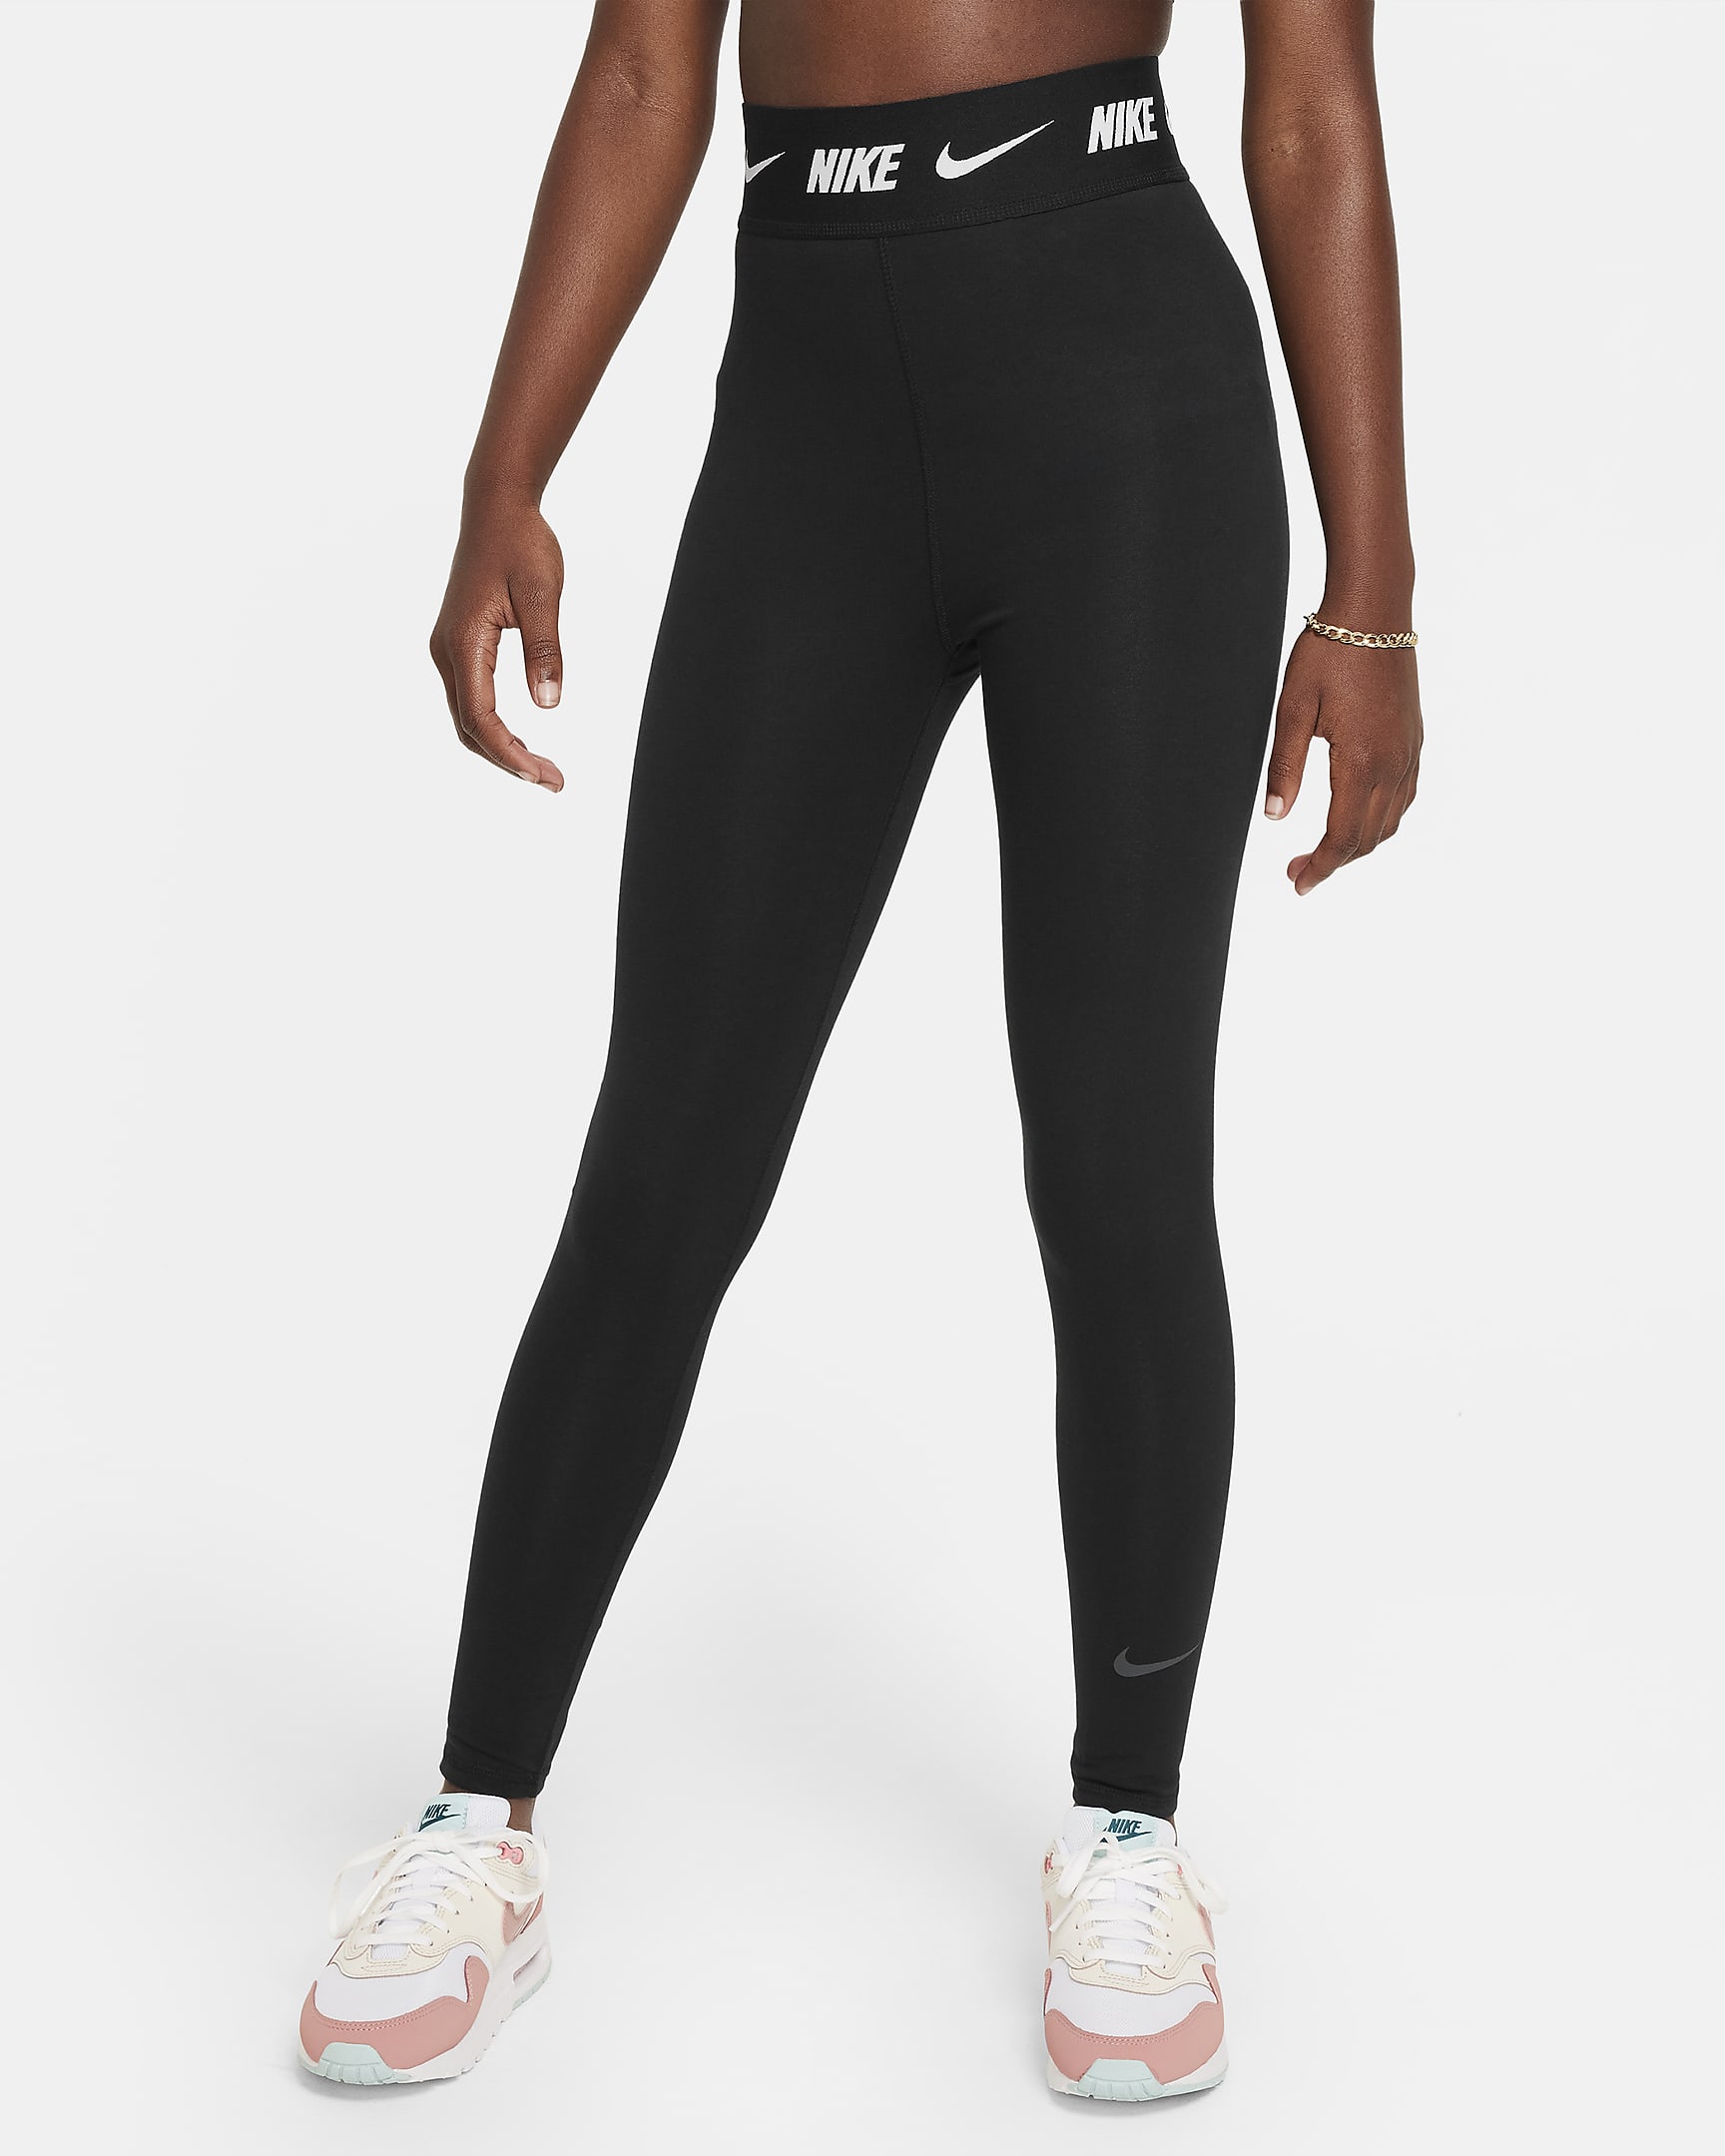 Nike Sportswear Favourites Older Kids' (Girls') High-Waisted Leggings - Black/Dark Smoke Grey